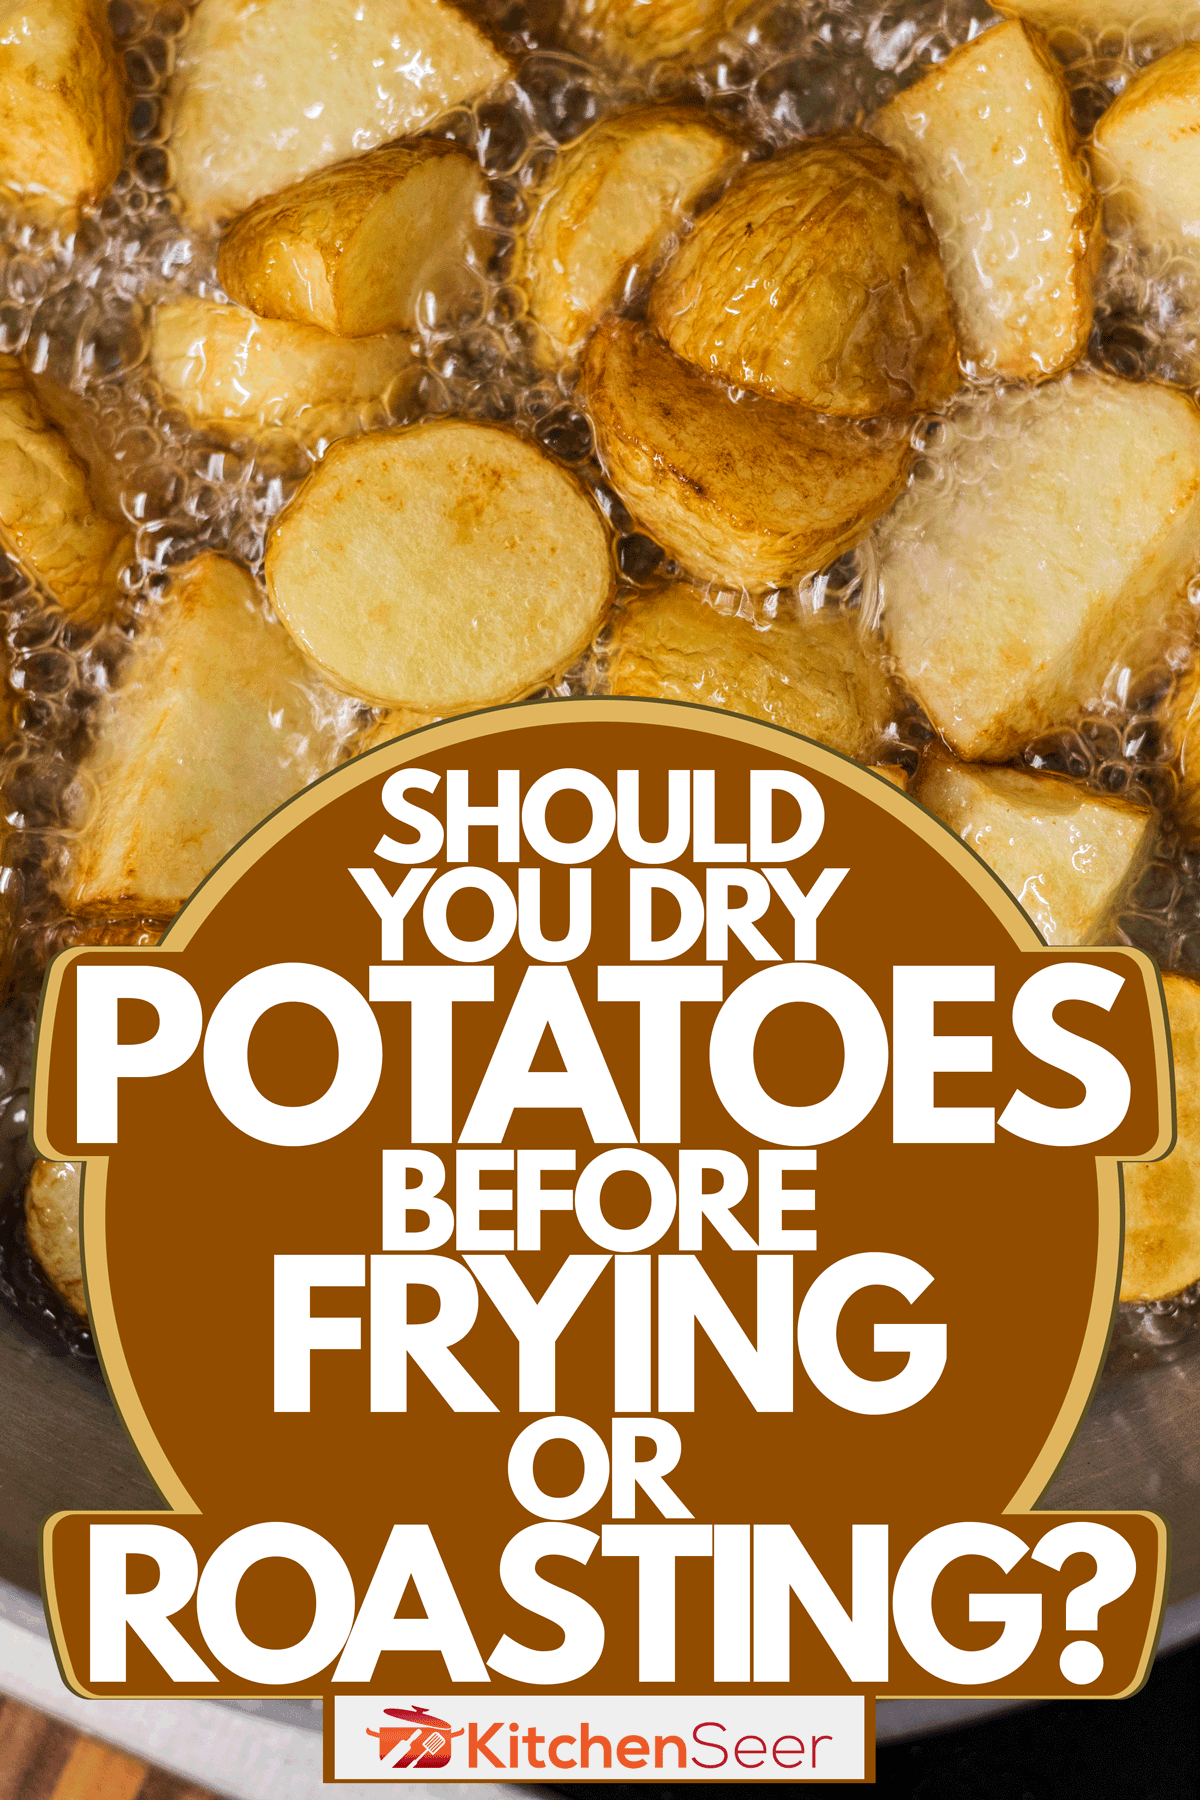 酱锅里装满了炸过的土豆片，炸或烤土豆之前应该把土豆擦干吗?